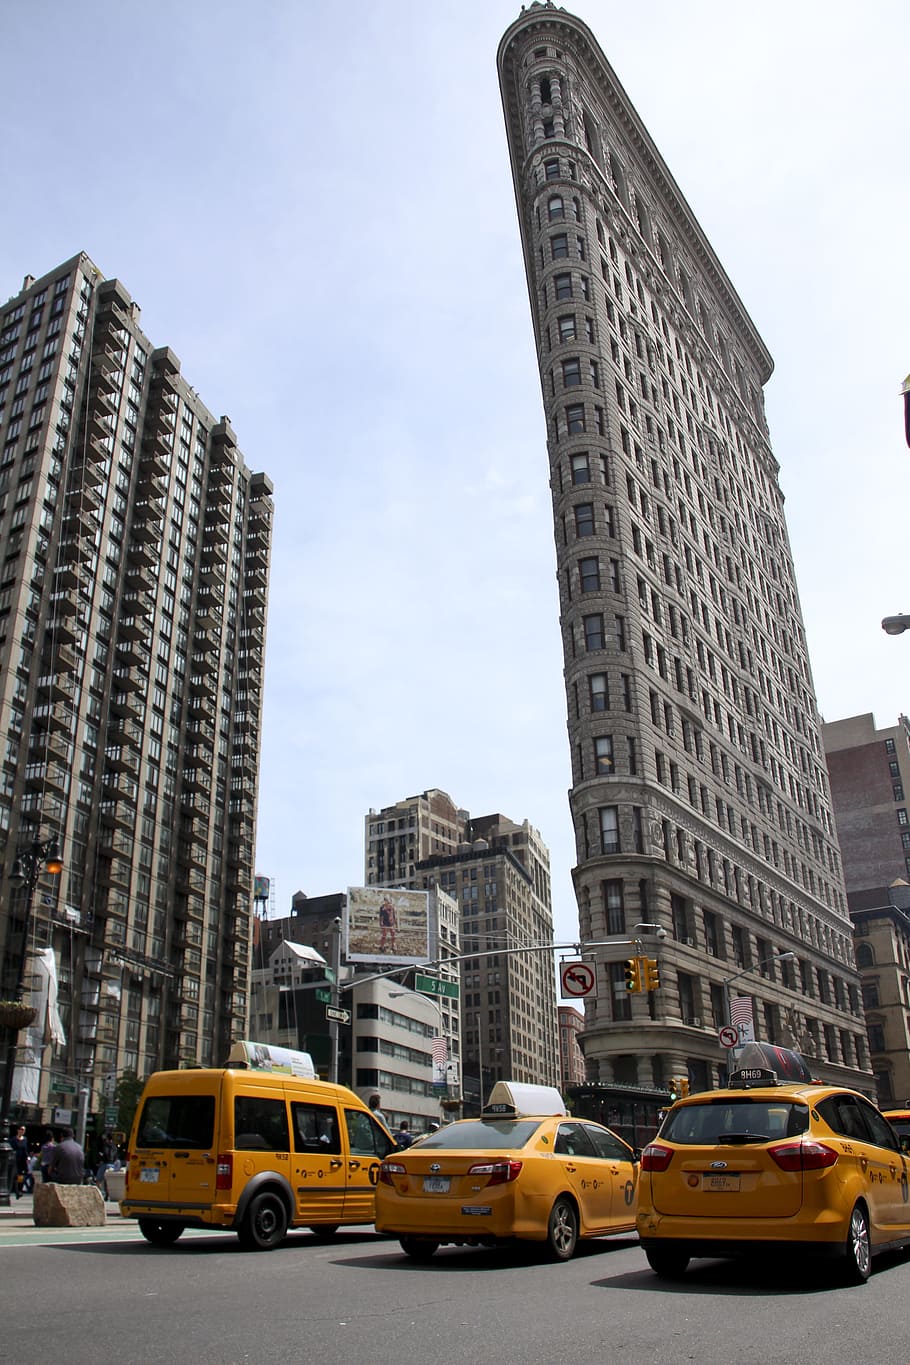 ciudad, rascacielos, Nueva York, arquitectura, edificio, Manhattan, taxi, plancha, exterior del edificio, modo de transporte